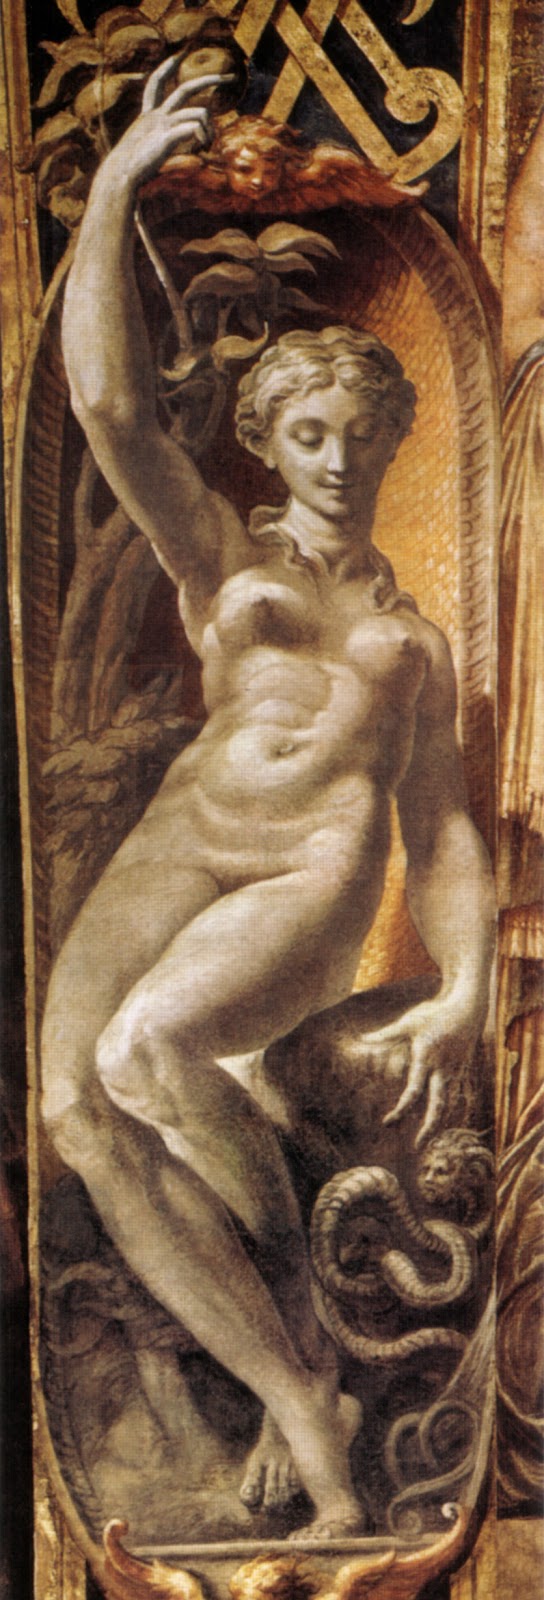 Parmigianino-1503-1540 (5).jpg